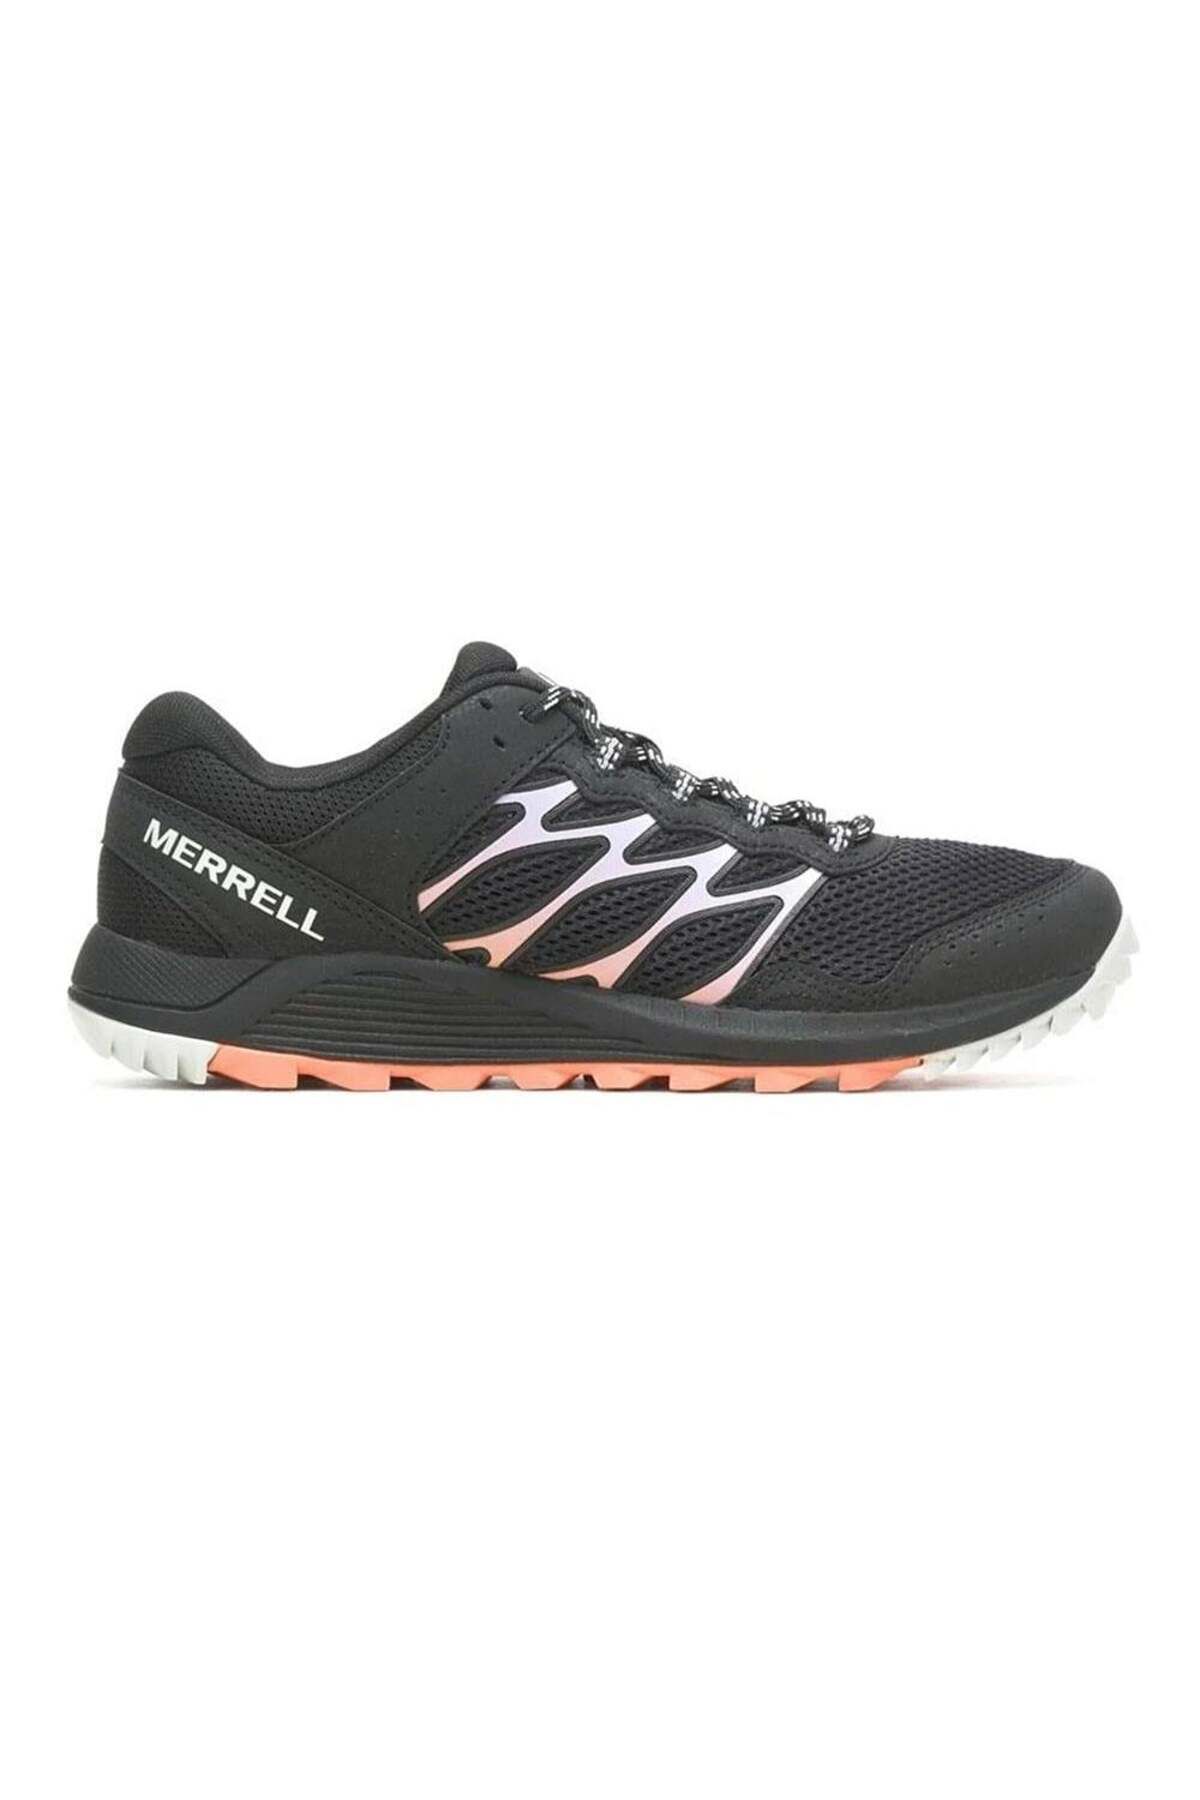 Merrell Wildwood Kadın Spor Ayakkabısı J067736